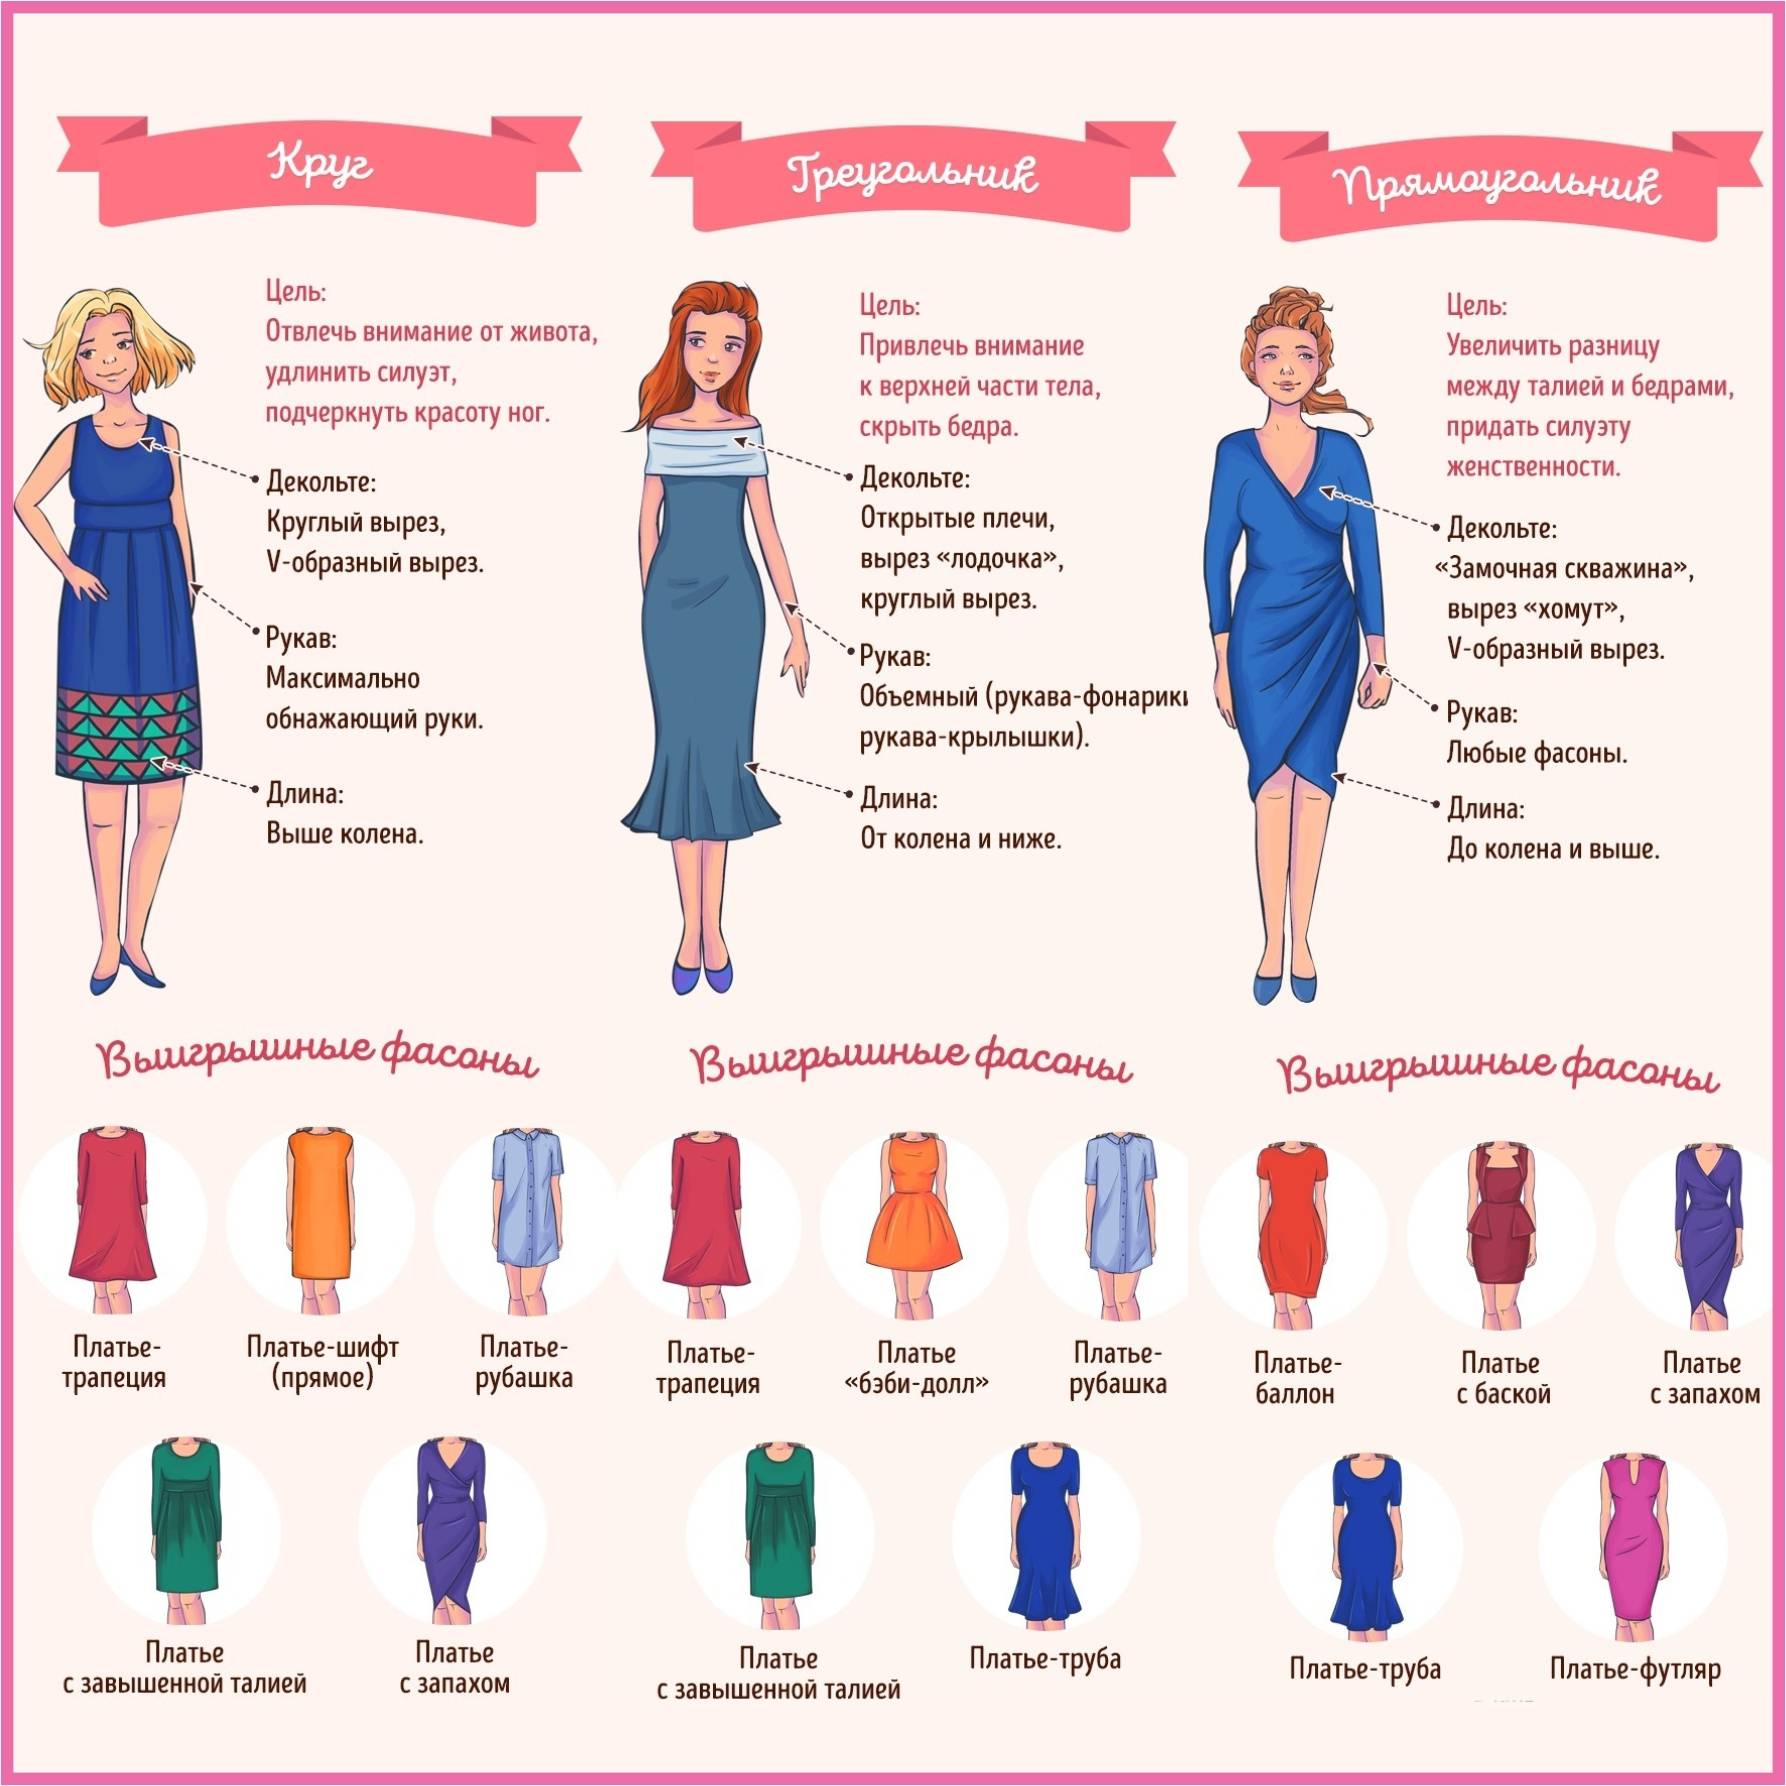 Как определить размер платья - таблица размеров